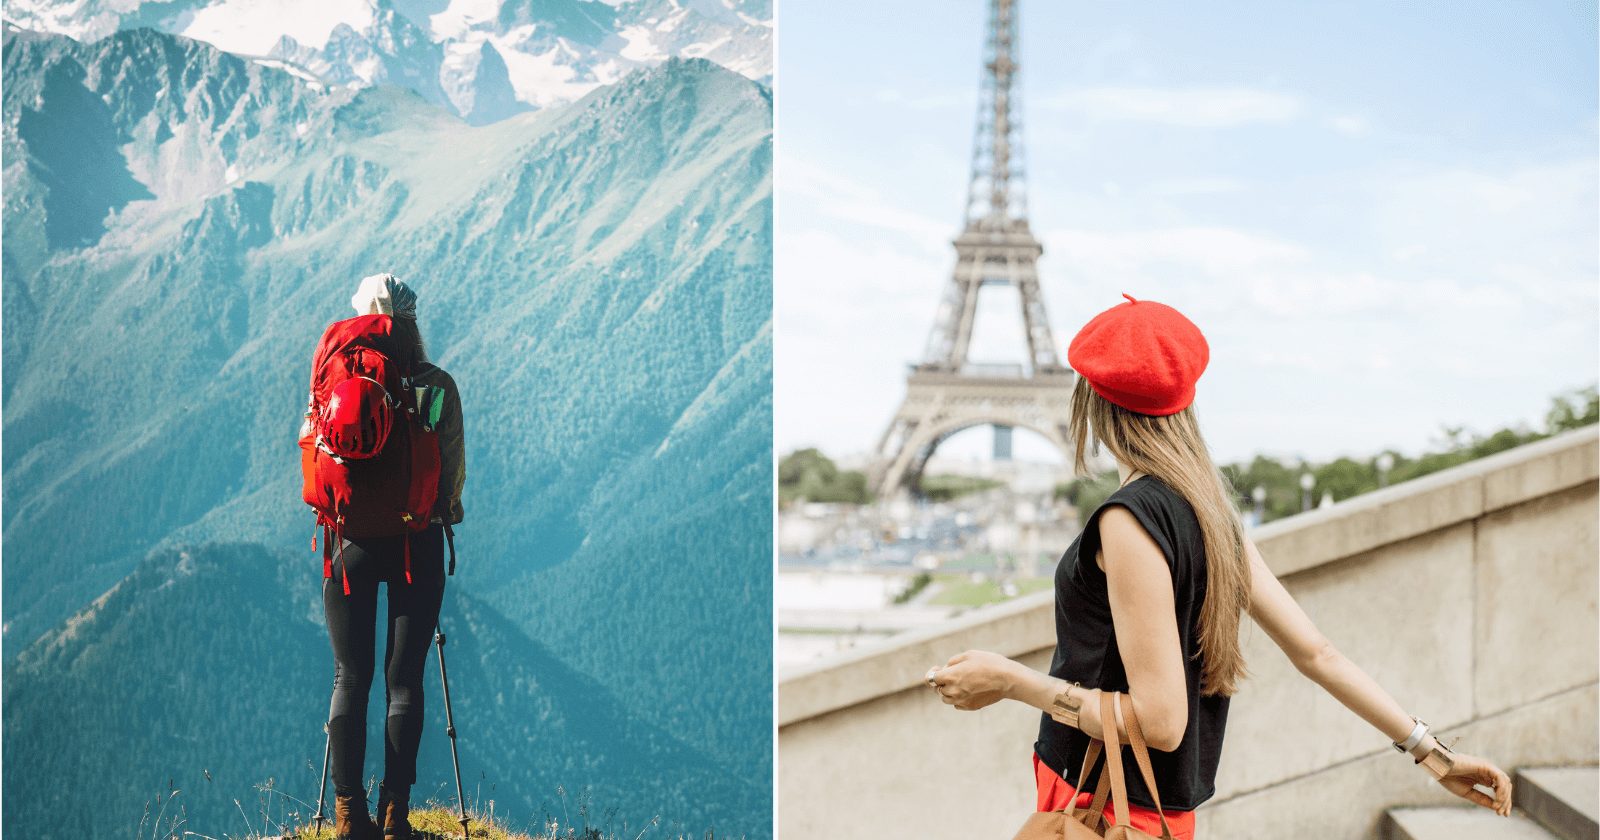 15 dicas de roupas para viajar: monte looks confortáveis sem faltar nada